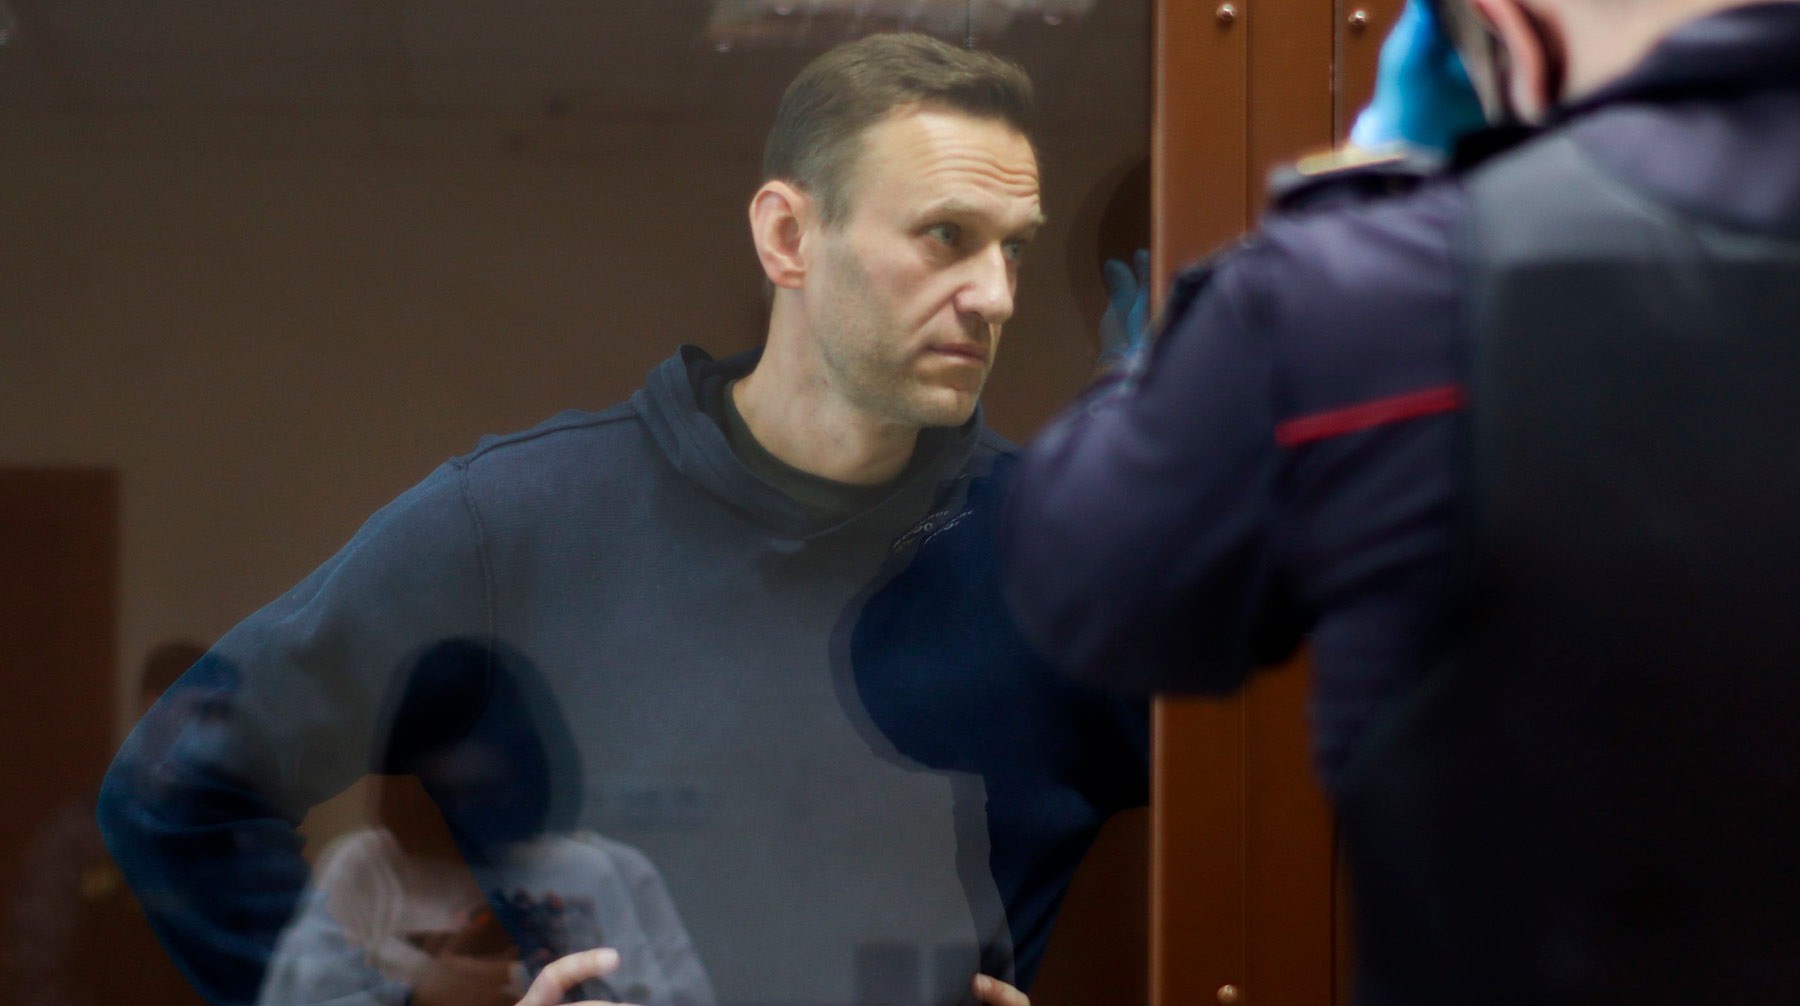 Dailystorm - Прокурор: Навальный довел ветерана Артеменко до скорой помощи